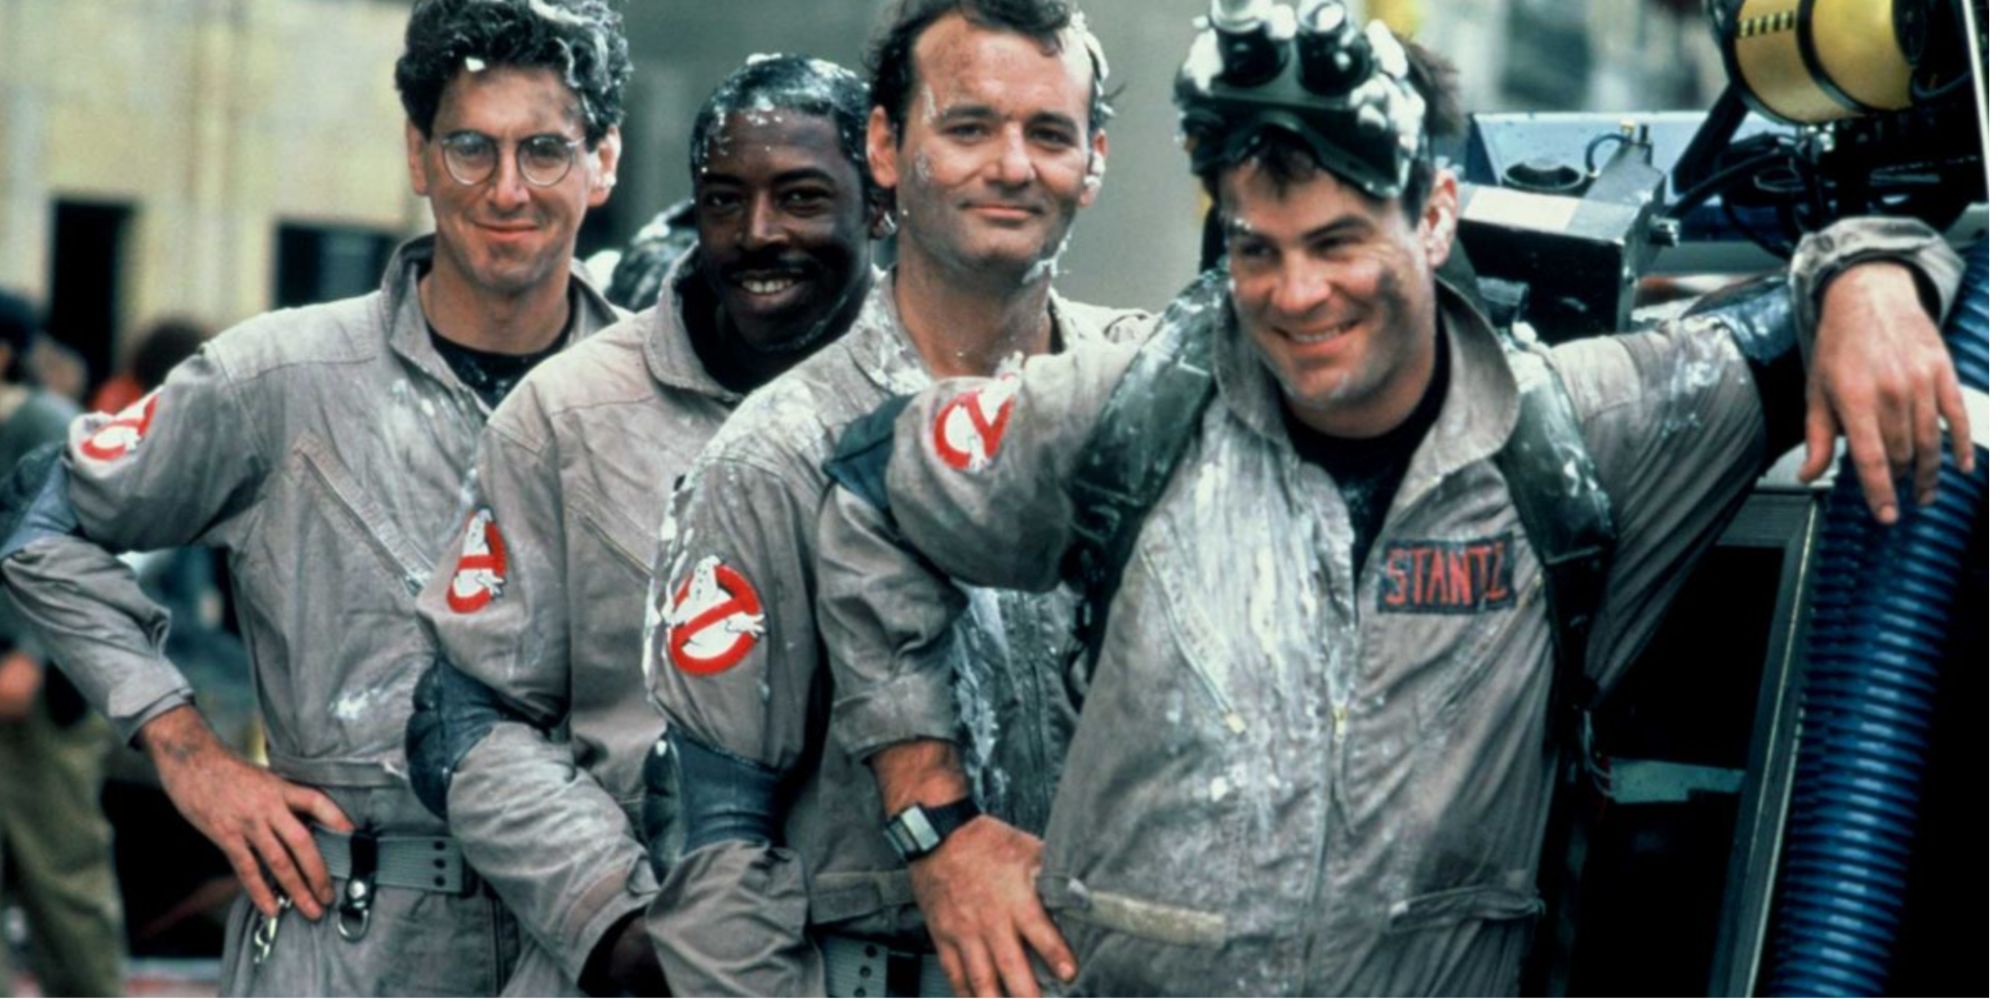 Harold Ramis, Ernie Hudson, Bill Murray and Dan Aykroyd in their Ghostbusters outfits 